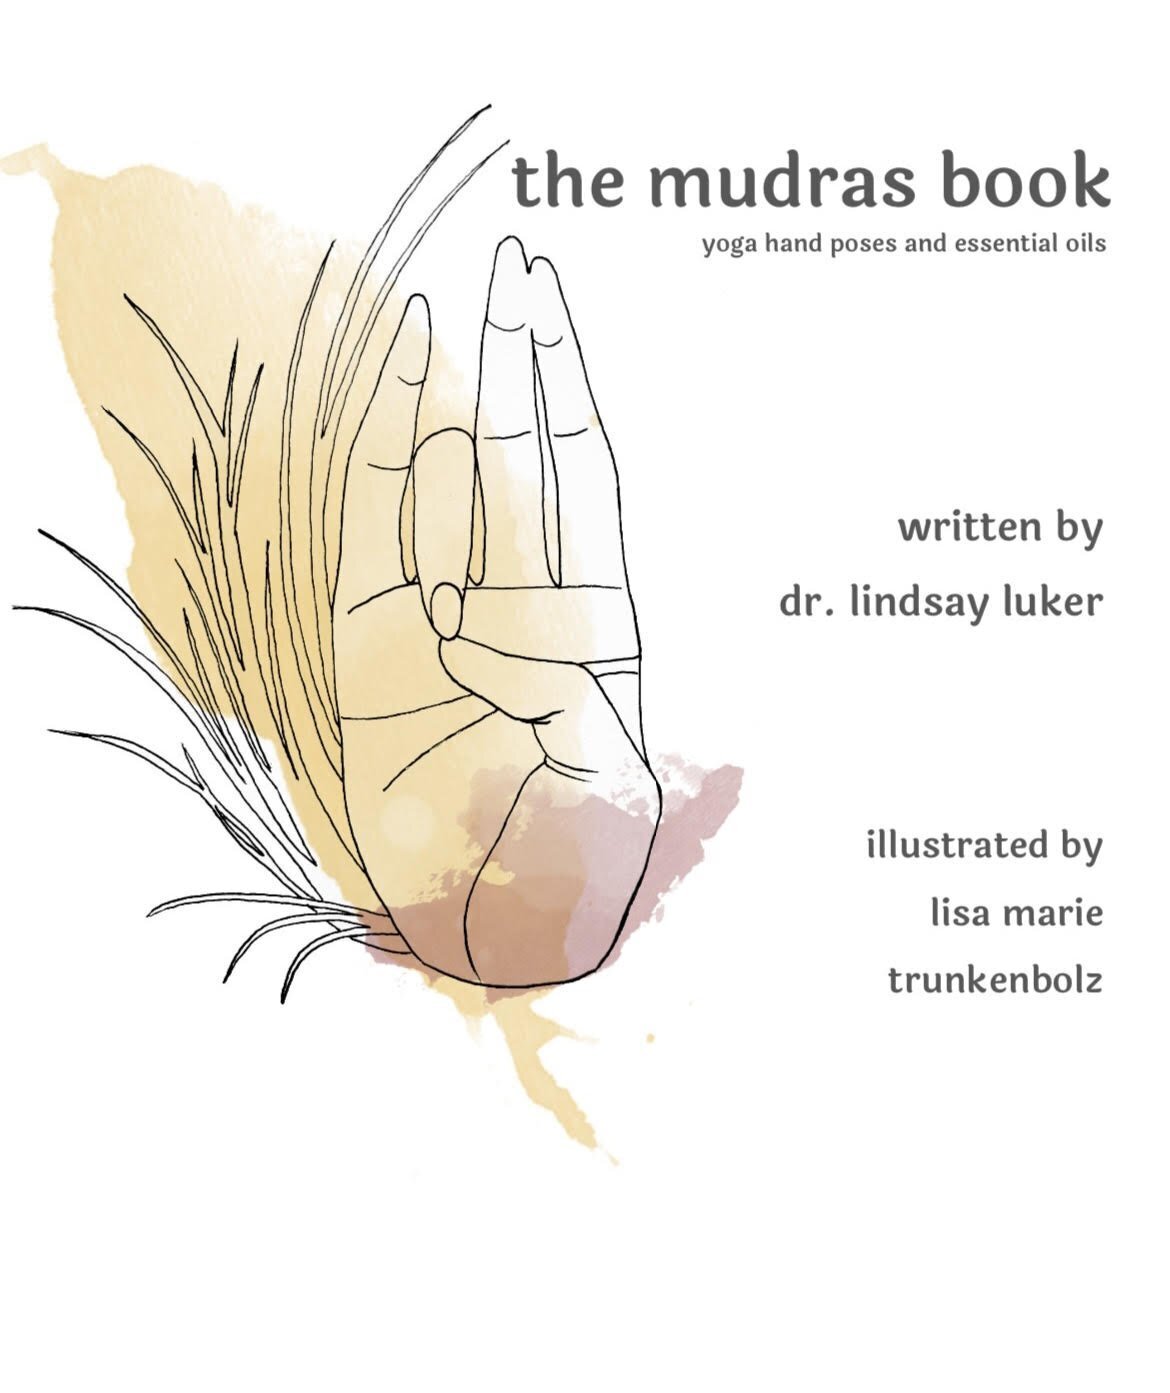 Dr. Lindsay Luker - the mudras book